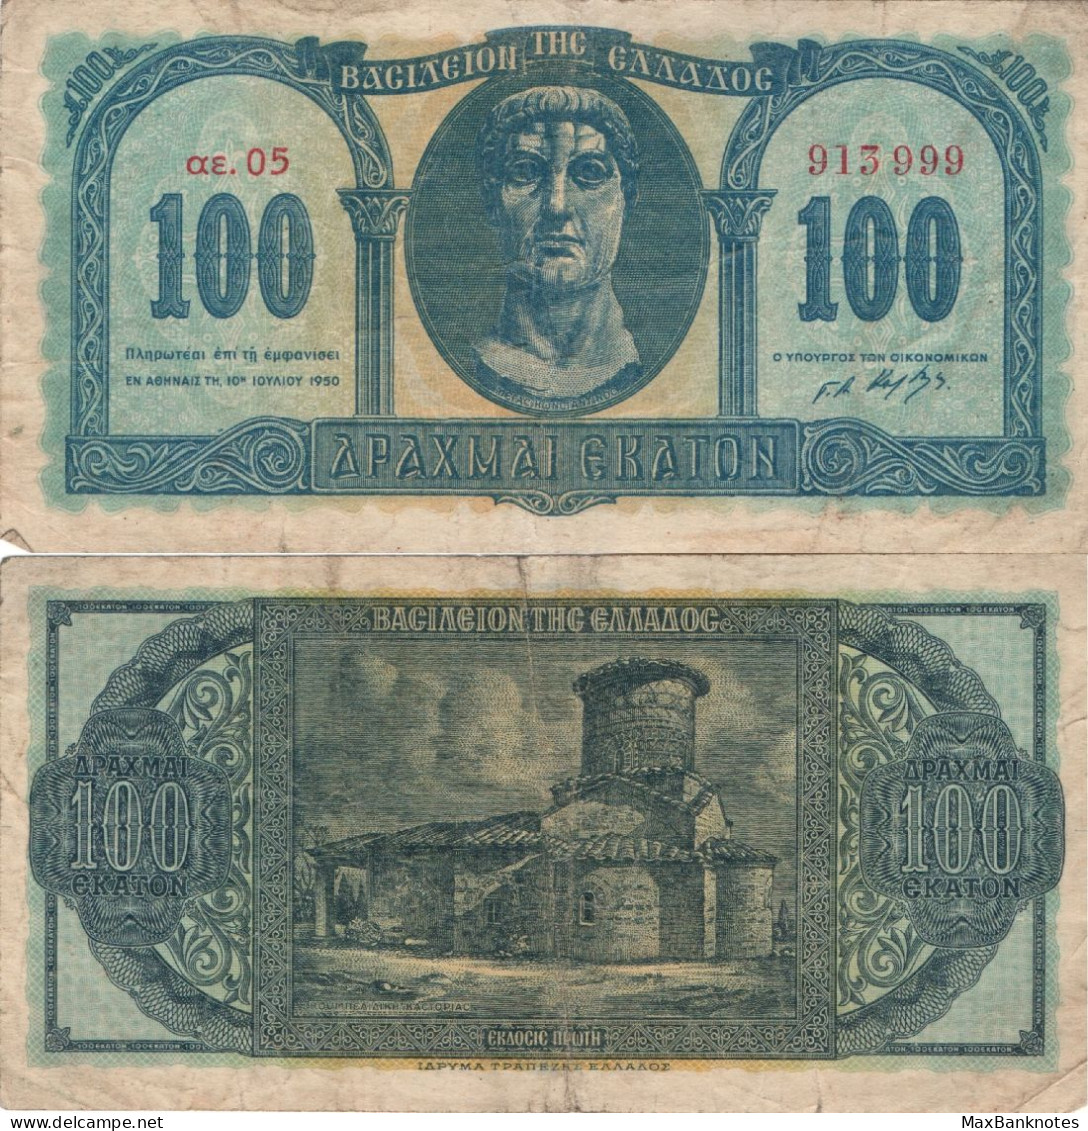 Greece / 100 Drachmai / 1950 / P-324(a) / VF - Greece